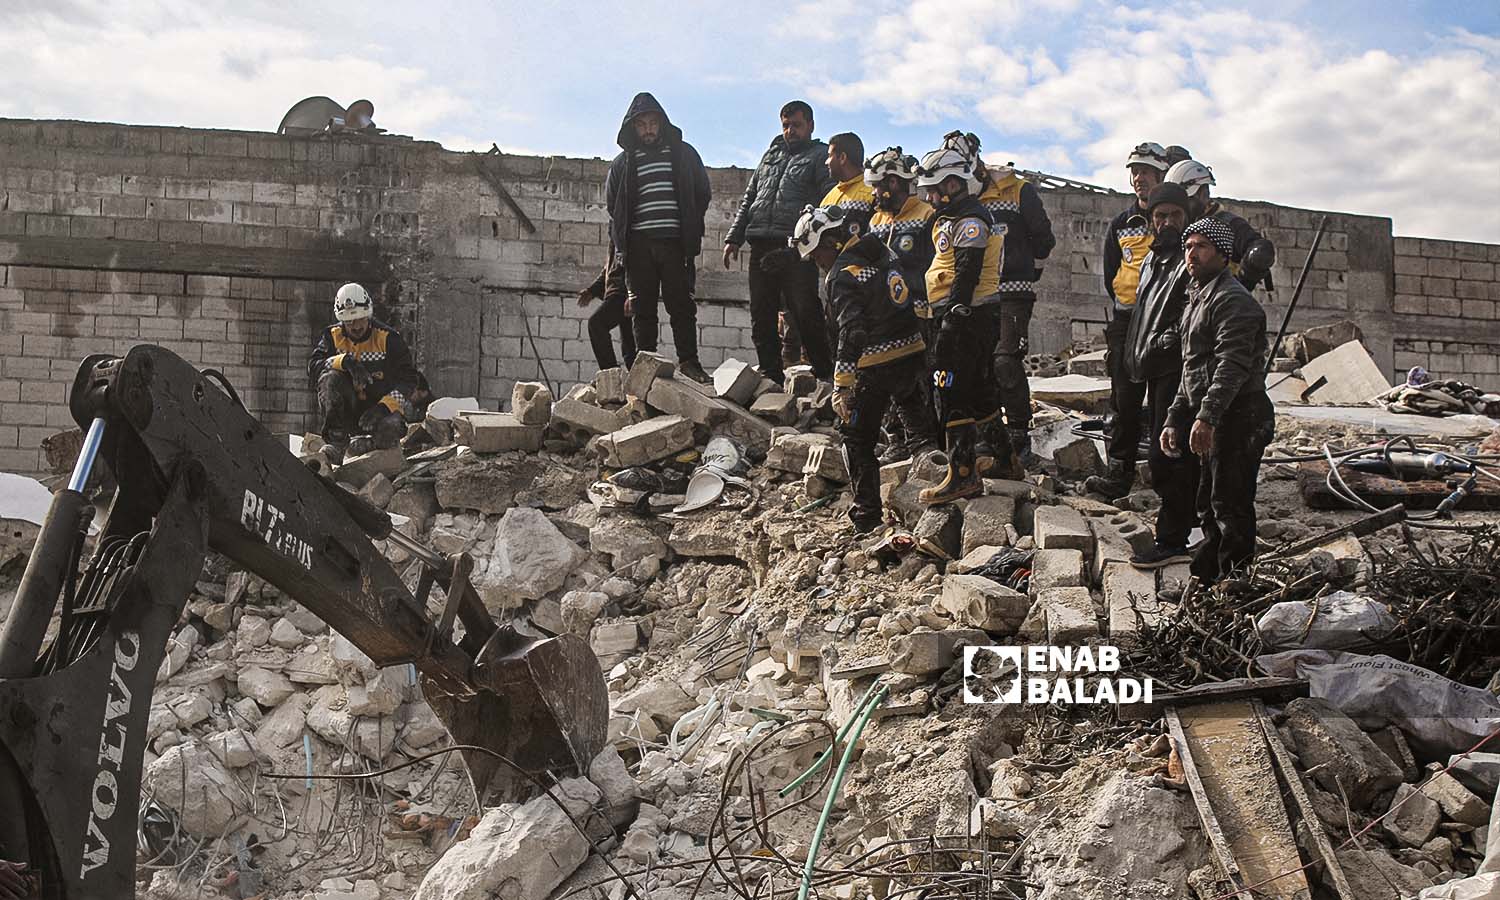 متطوعون من "الدفاع المدني السوري" يحاولون إنقاذ وانتشال الضحايا من تحت الركام في منطقة أرمناز إثر زلزال ضرب مناطق شمال غربي سوريا- 7 شباط 2023 (عنب بلدي/ إياد عبد الجواد)